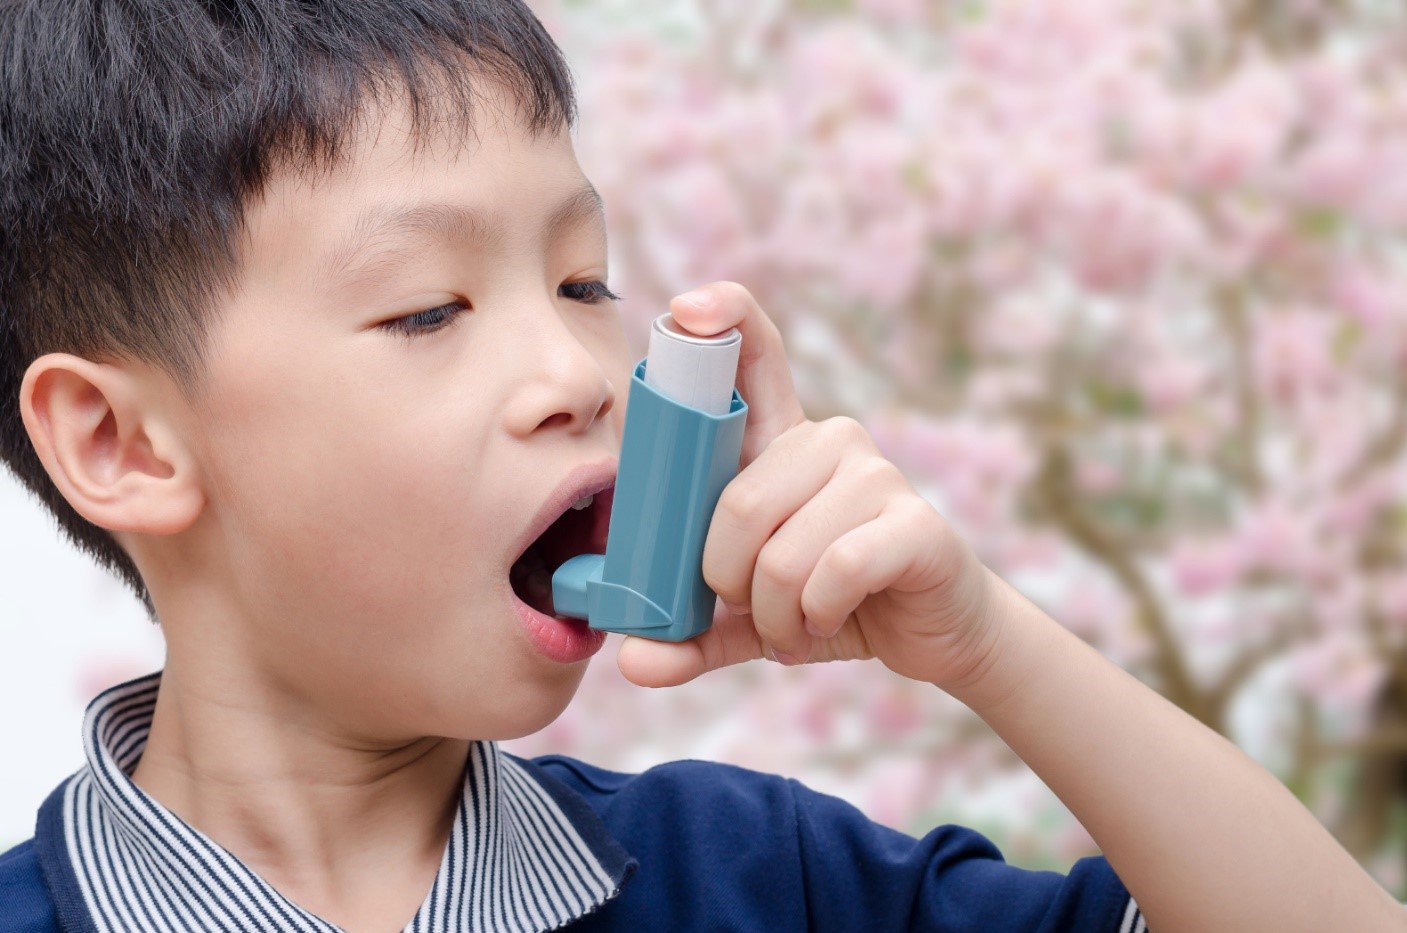 Sử dụng bình xịt định liều MDI cho trẻ hen suyễn